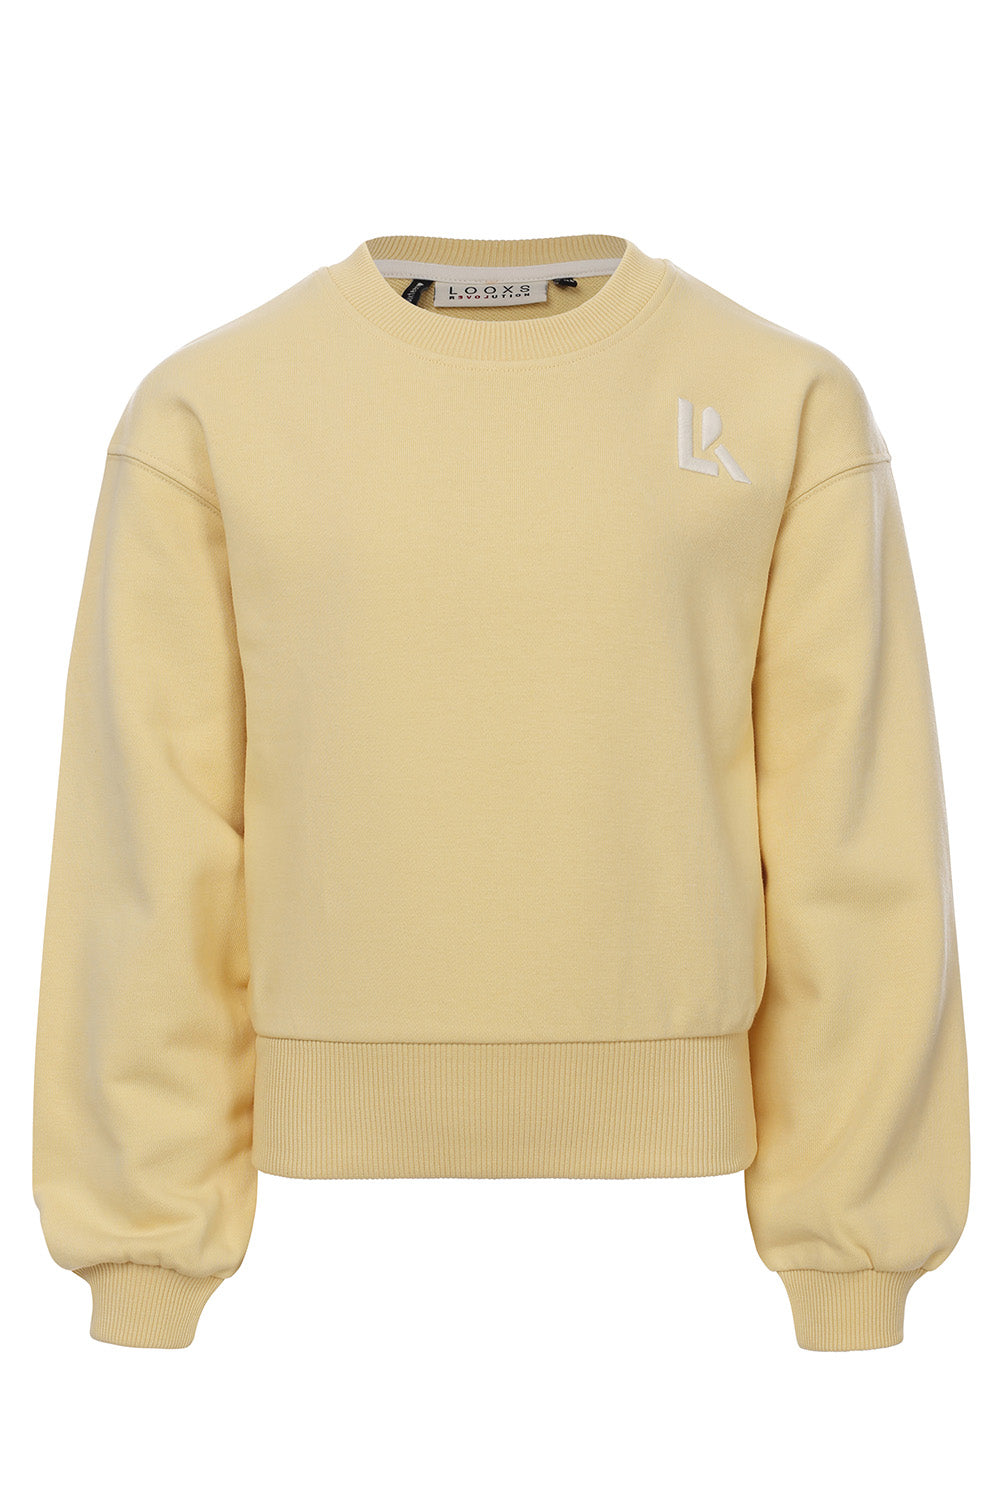 Meisjes Sweater van LOOXS 10sixteen in de kleur Soft yellow in maat 176.